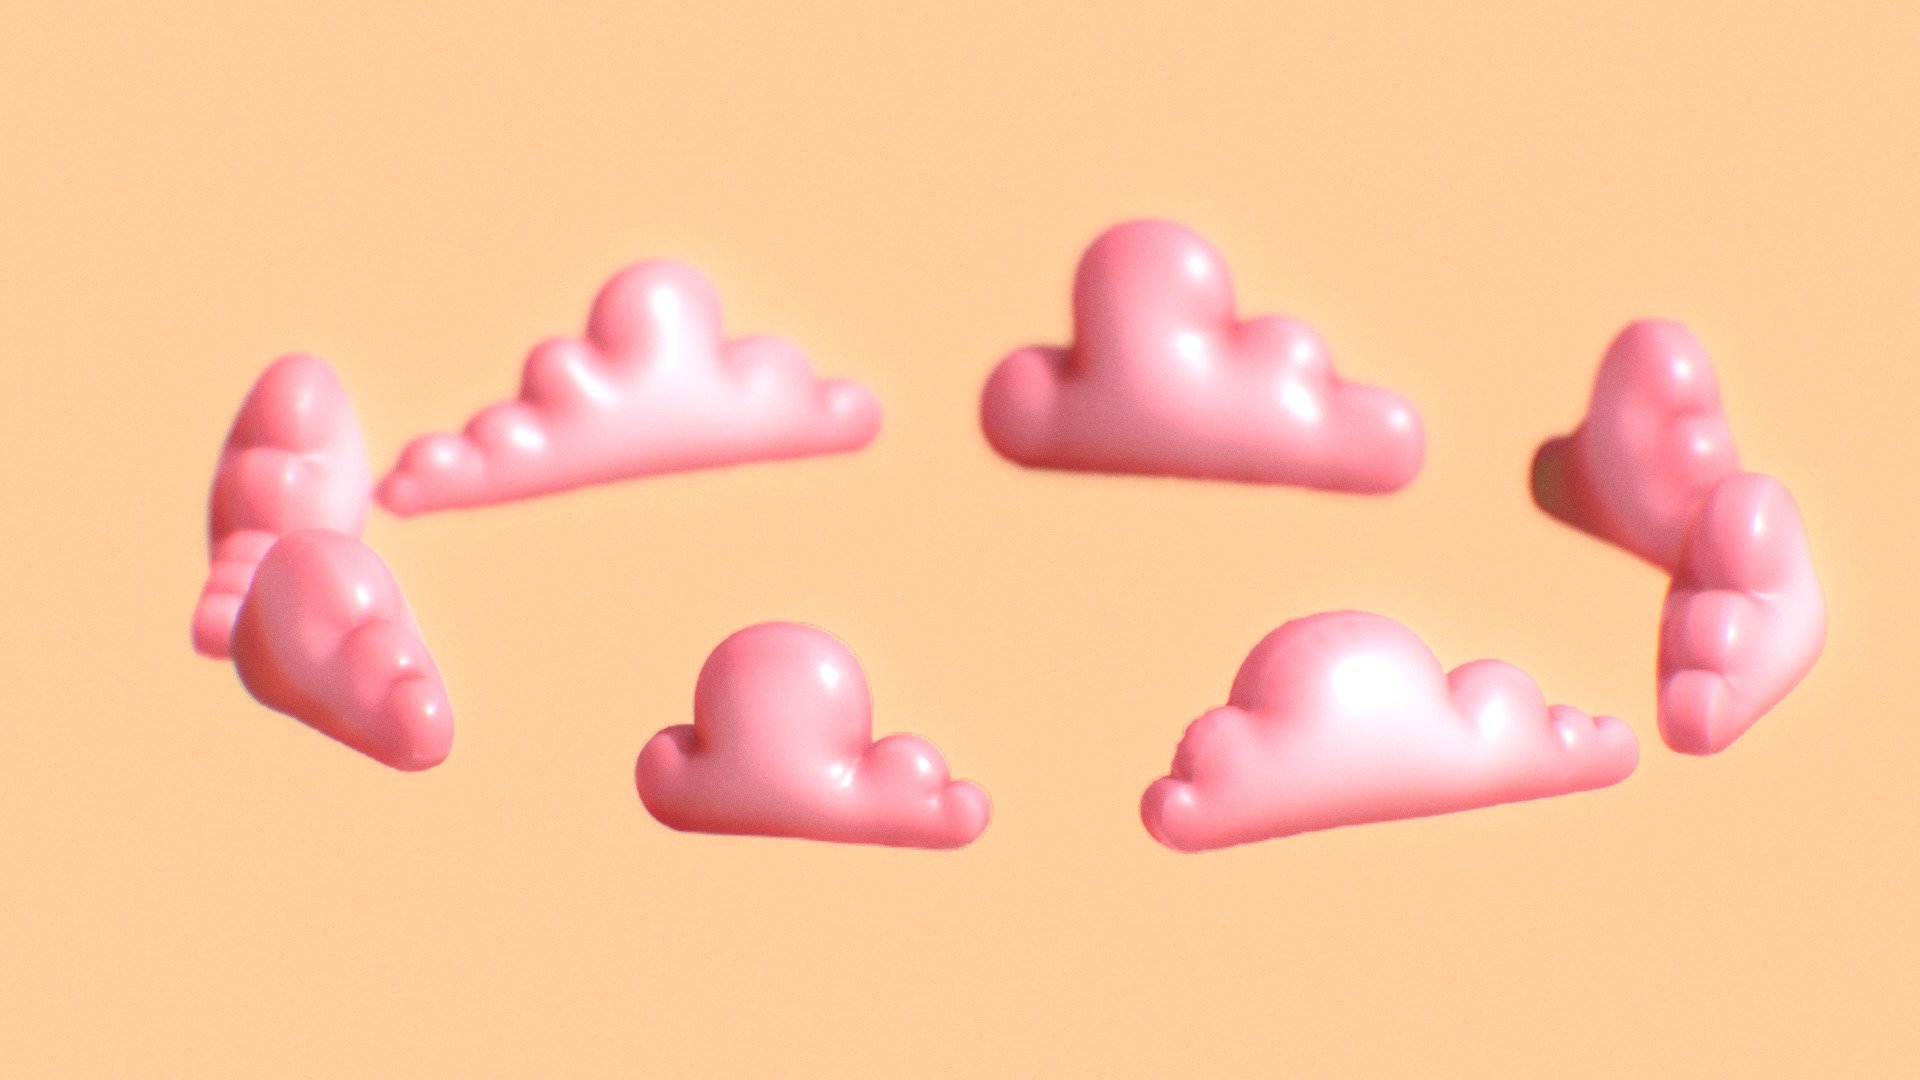 (ﾉ◕ヮ◕)ﾉ:･ﾟ✧ Fluffy pillow clouds ✧ﾟ･: ヽ(◕ヮ◕ヽ)

If you post your work on instagram please tag me, I want to see how you use my 3d models. @leo_isidrobyme ༼ つ ◕_◕ ༽ つ - CLOUDS PACK 5 - Buy Royalty Free 3D model by Leo Isidro (@leo.isidro3) 3d model